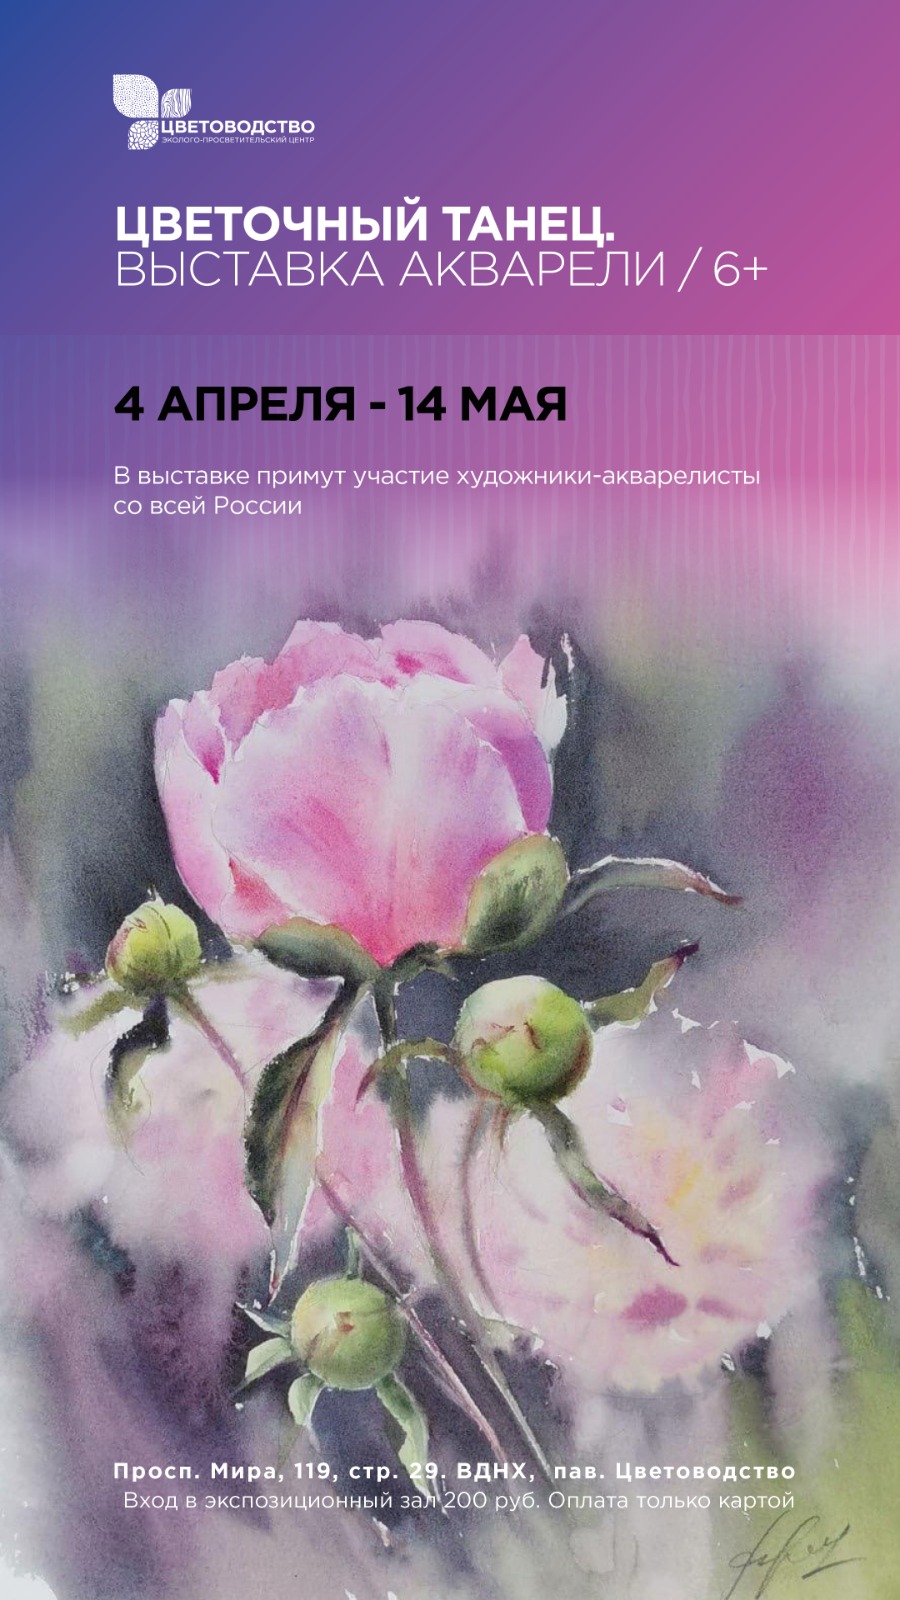 Цветочный танец: Мосприрода приглашает на открытие выставки акварельных цветов - фото 1